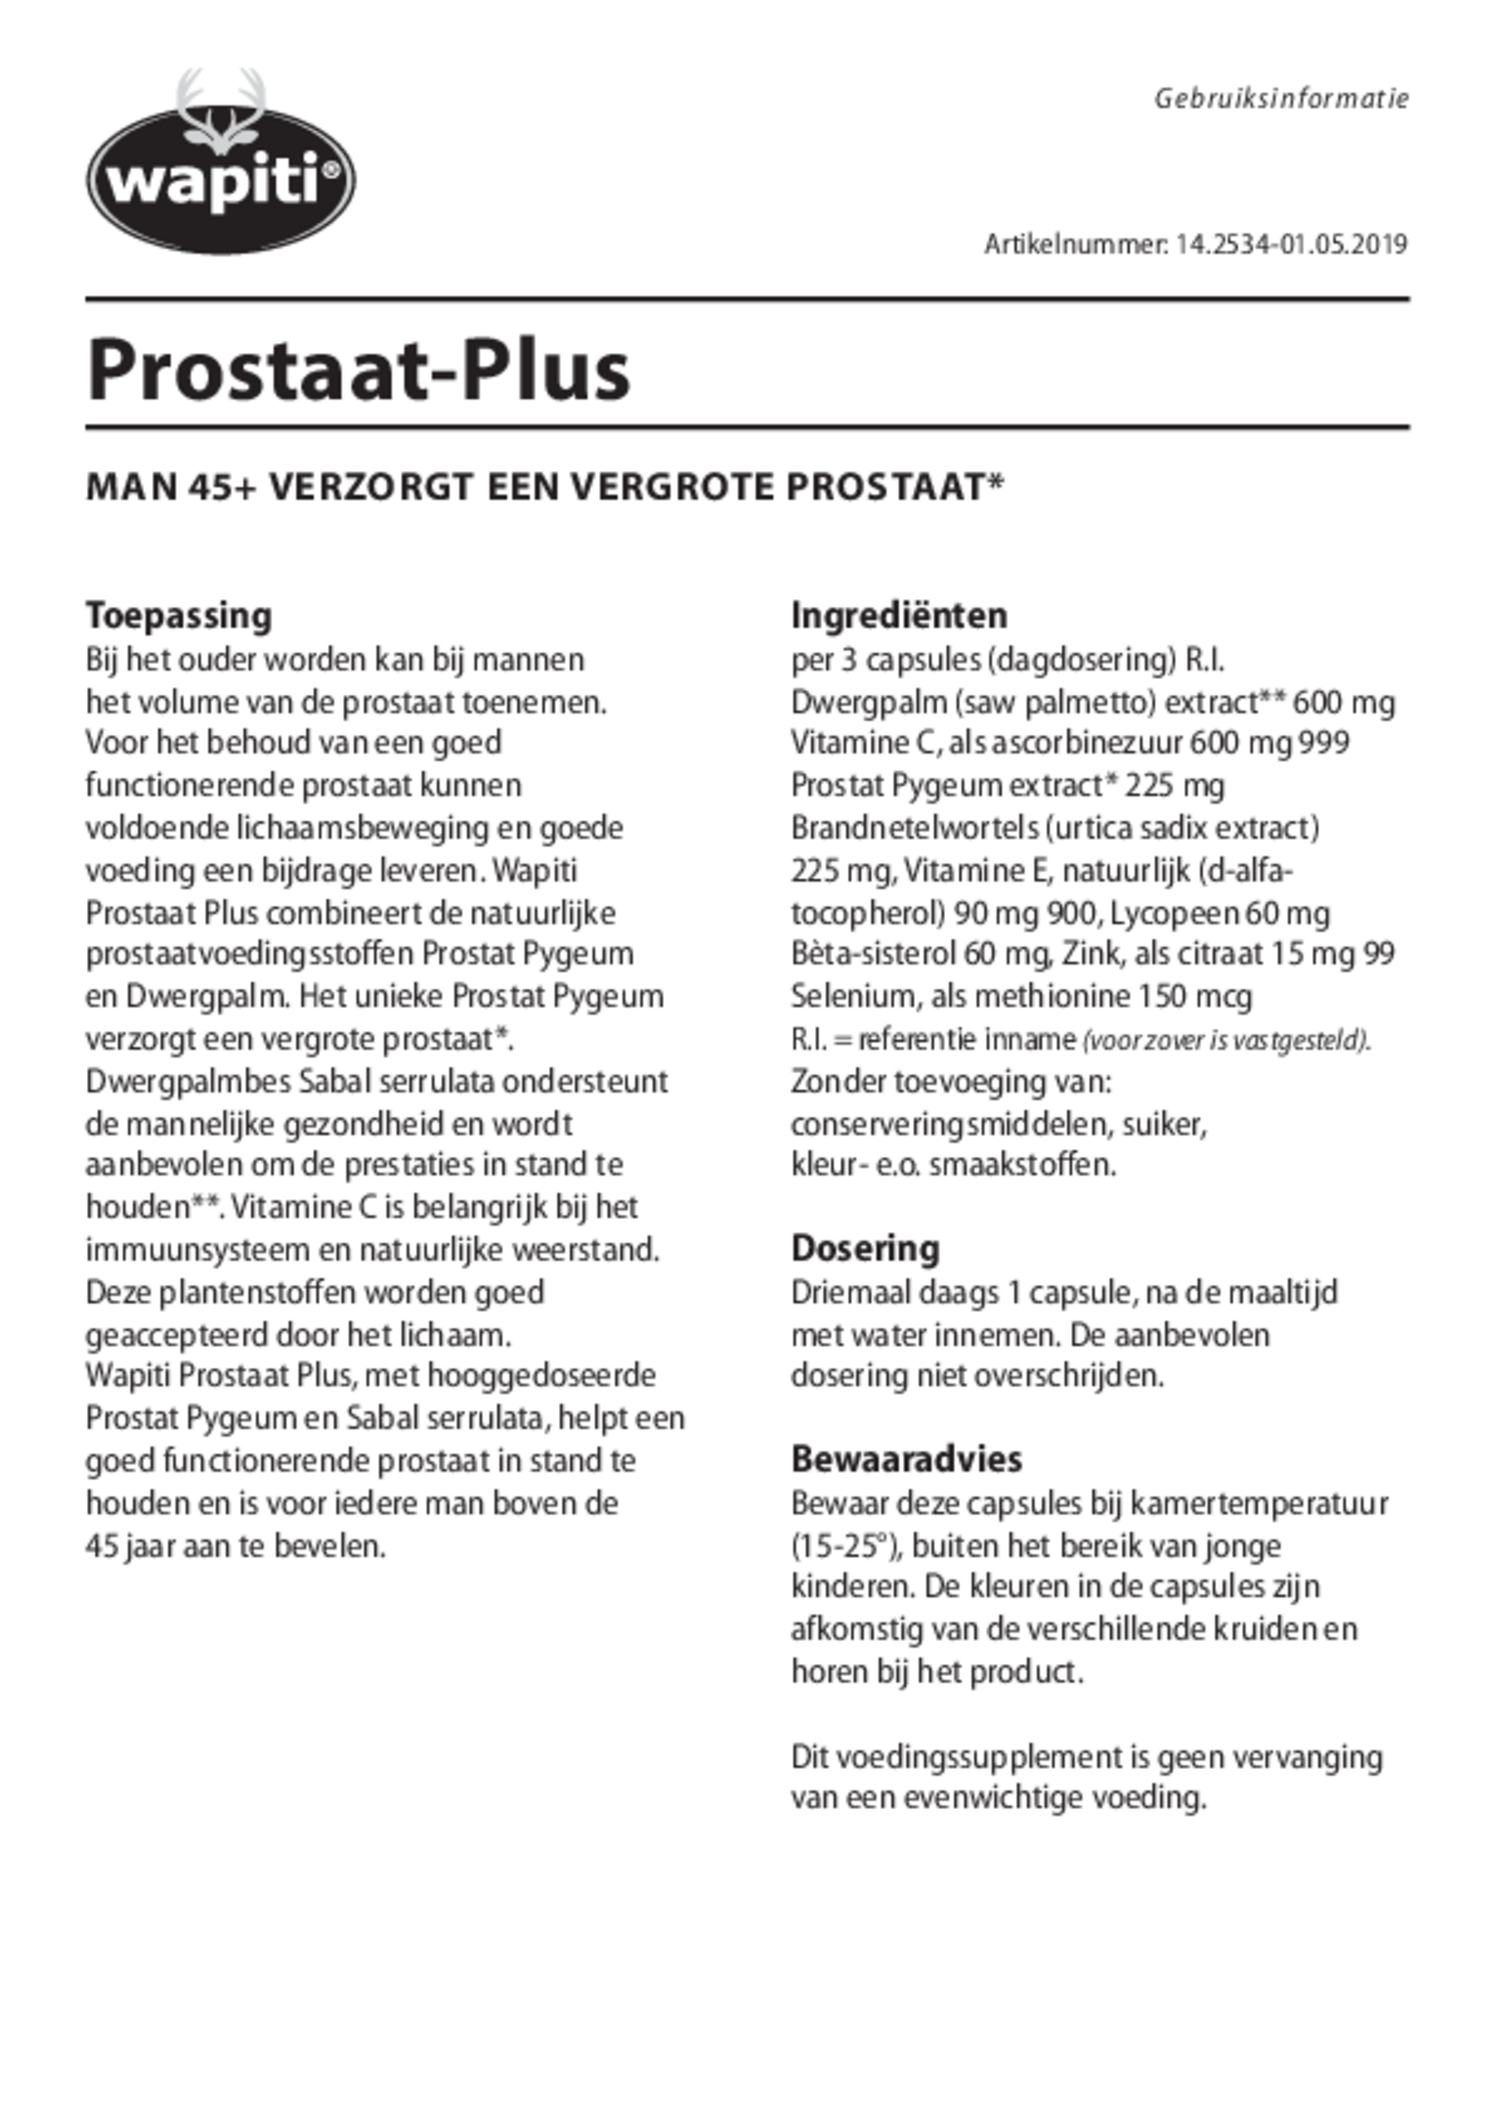 Prostaat Plus Capsules afbeelding van document #1, gebruiksaanwijzing